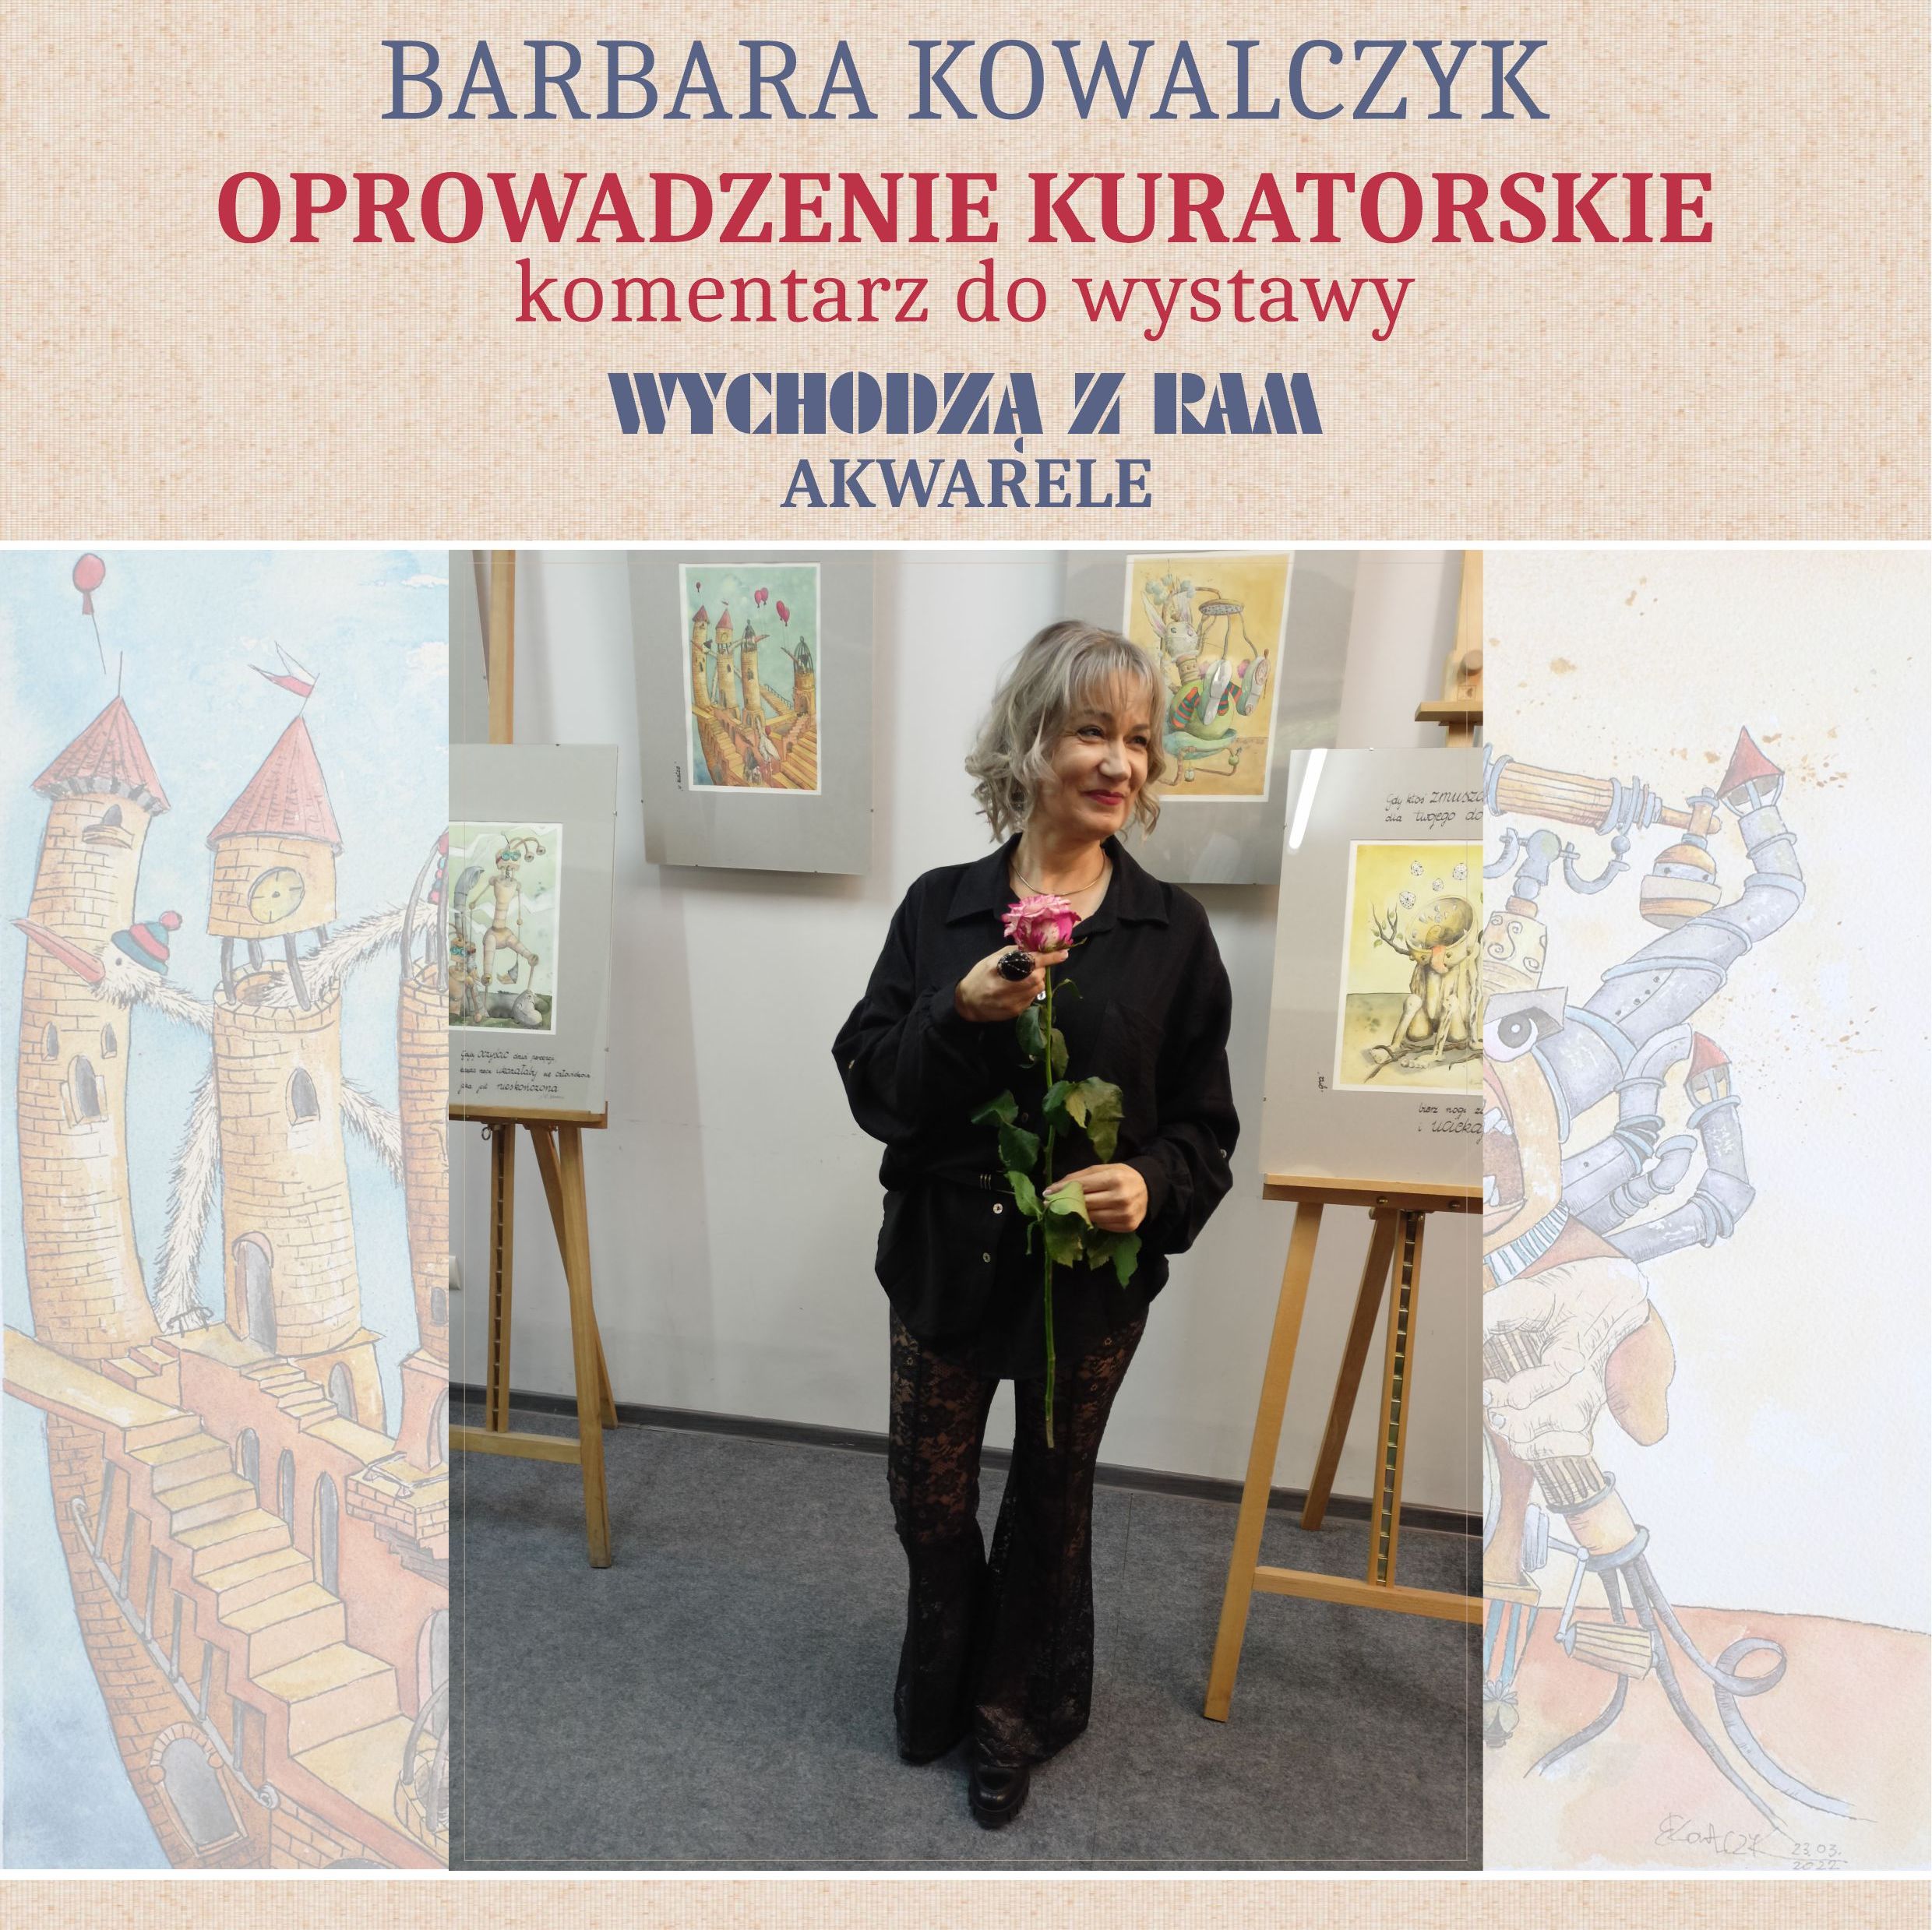 Barbara Kowalczyk - Wychodzą Z Ram, Akwarele, Oprowadzenie Kuratorskie - Kwadrat